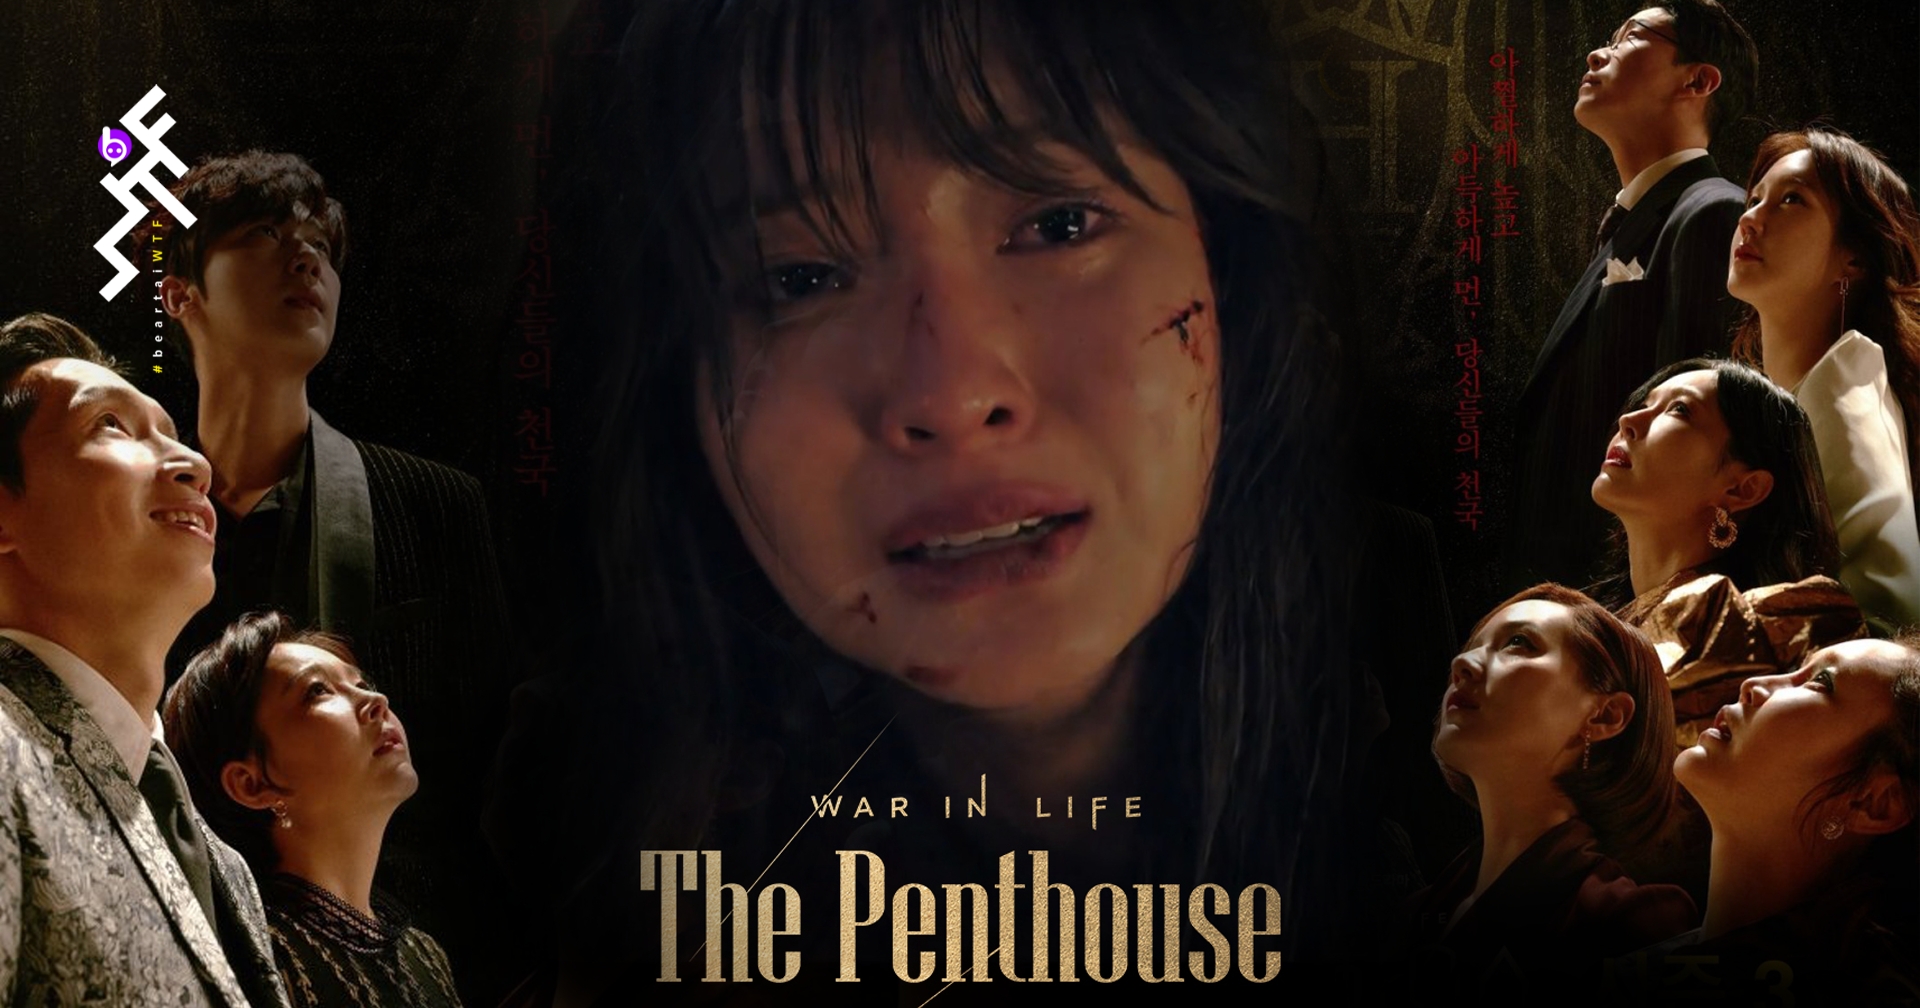 ปิดฉาก The Penthouse SS1 ดราม่าเข้มข้น ที่ต้องลุ้นจนฉากสุดท้าย “ใครยังไม่ดู รีบเลย”